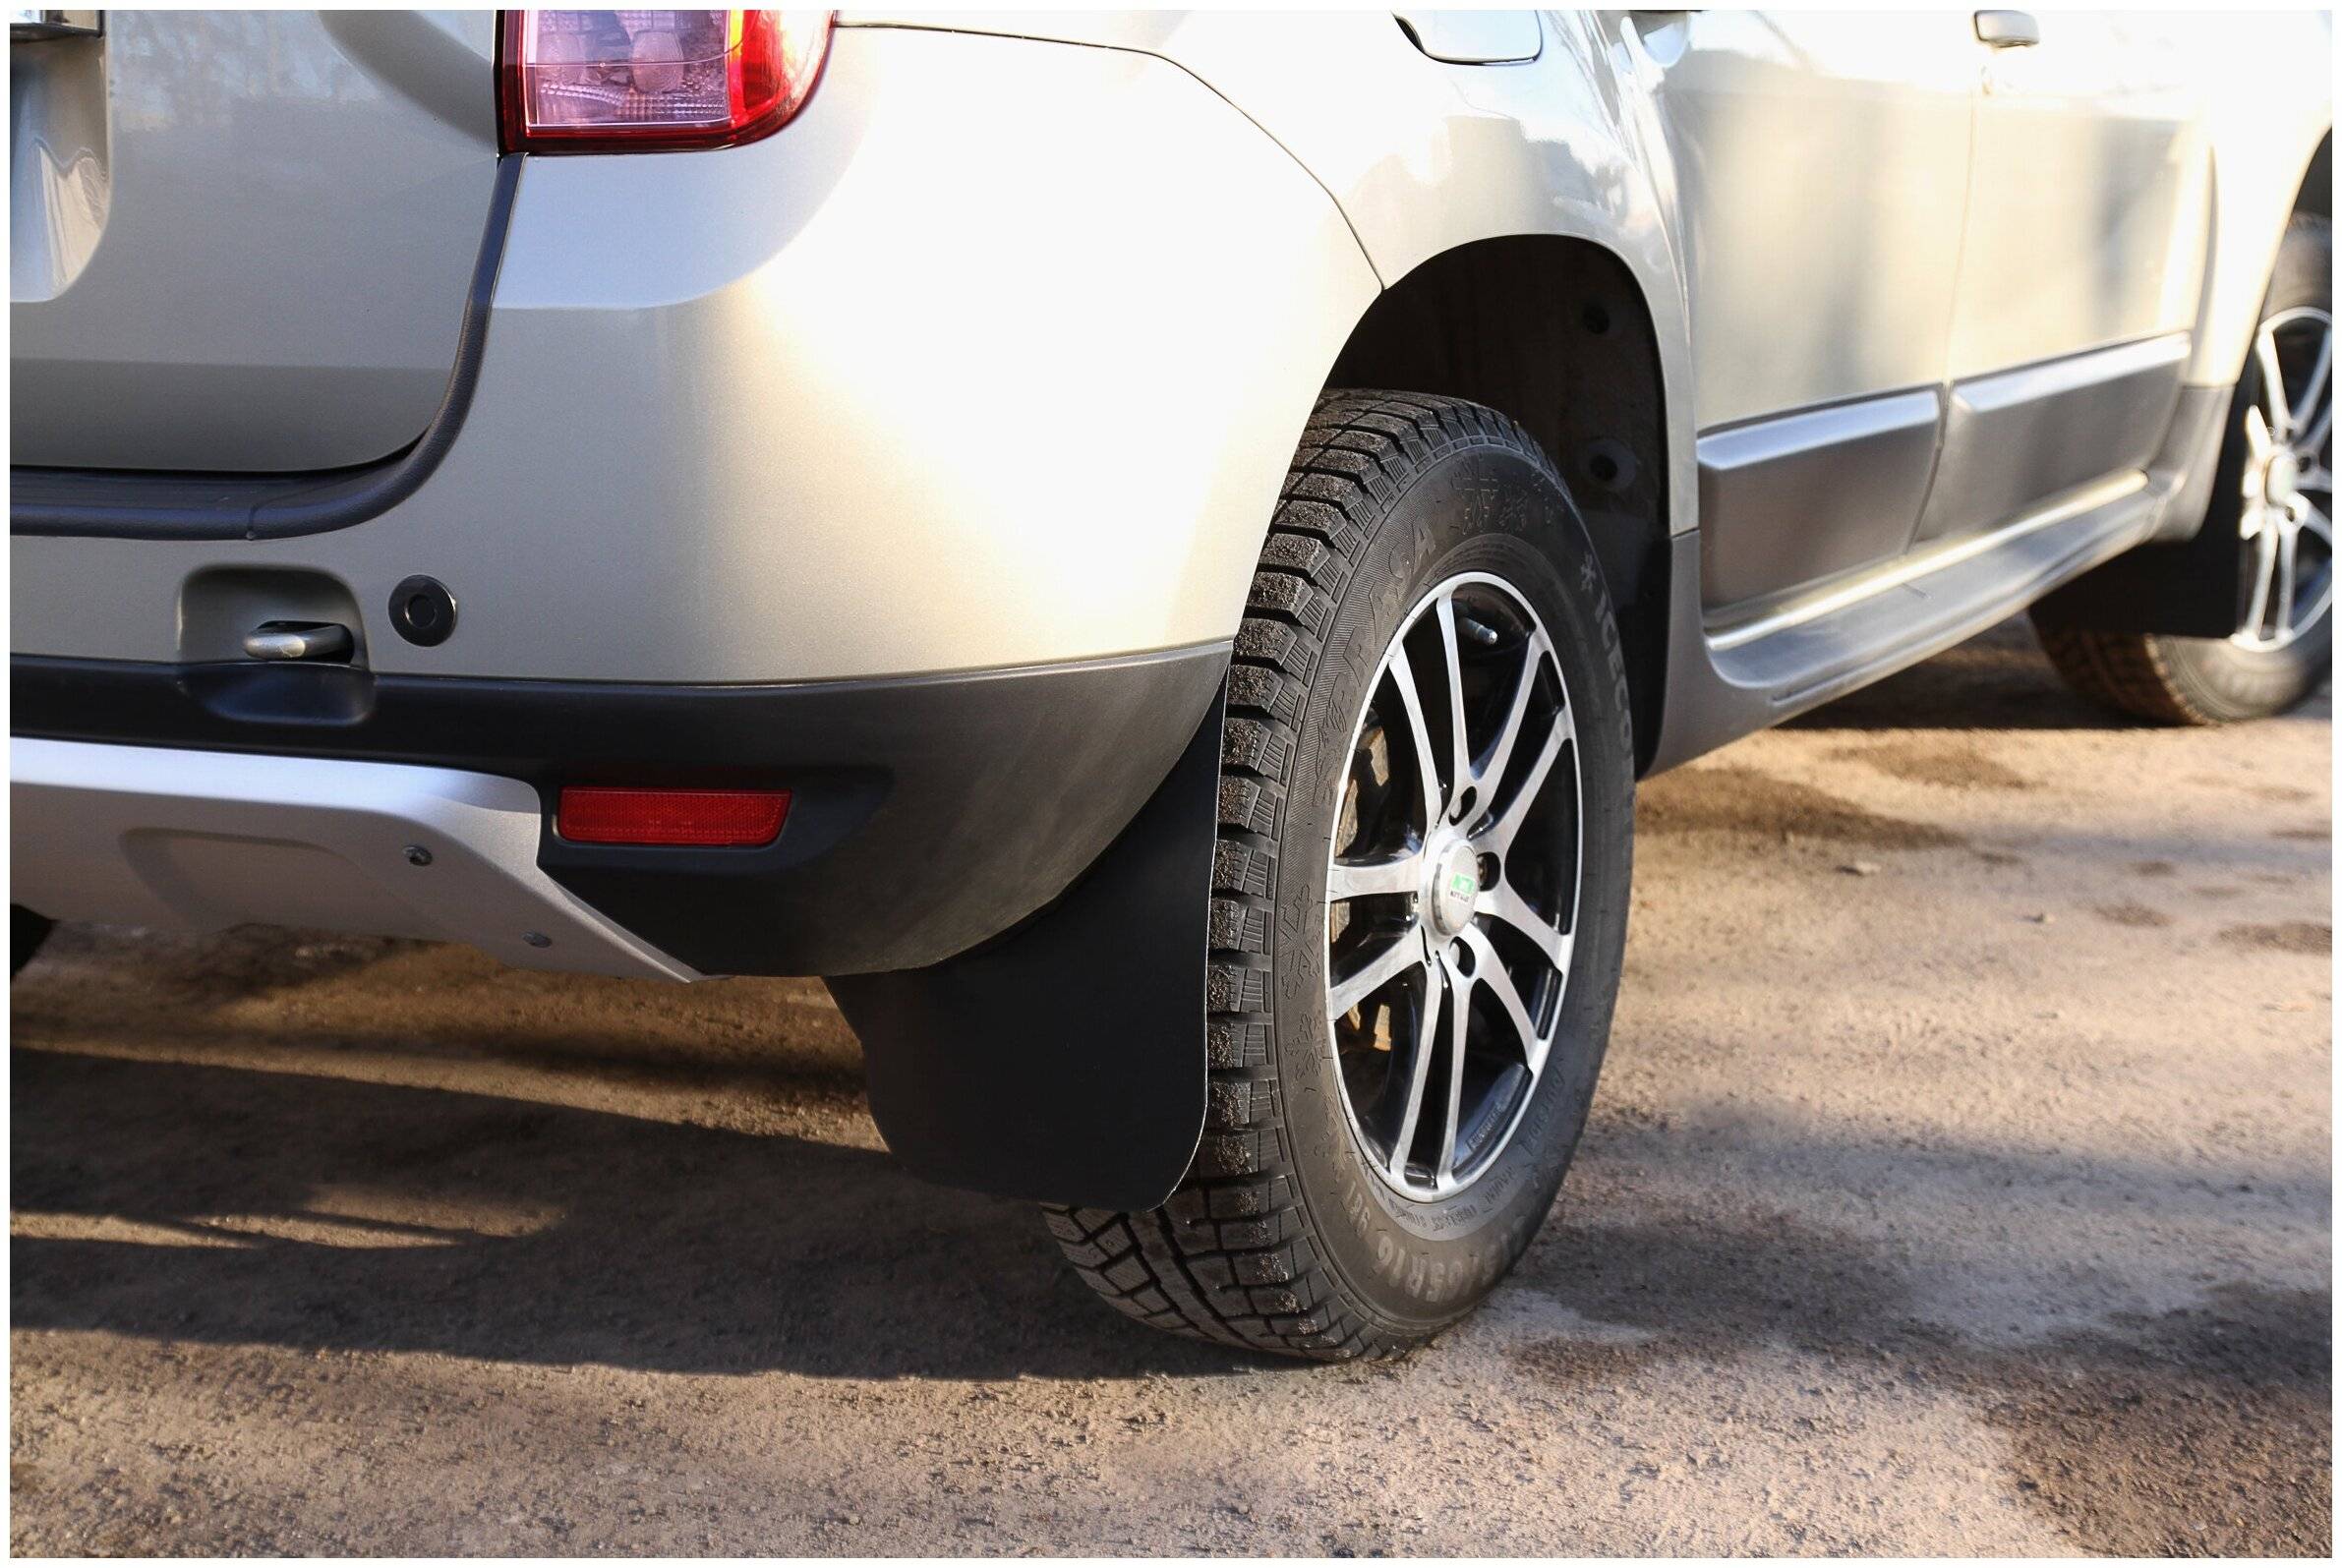 Брызговики дастер гард – помогут ли защитить авто от грязи?